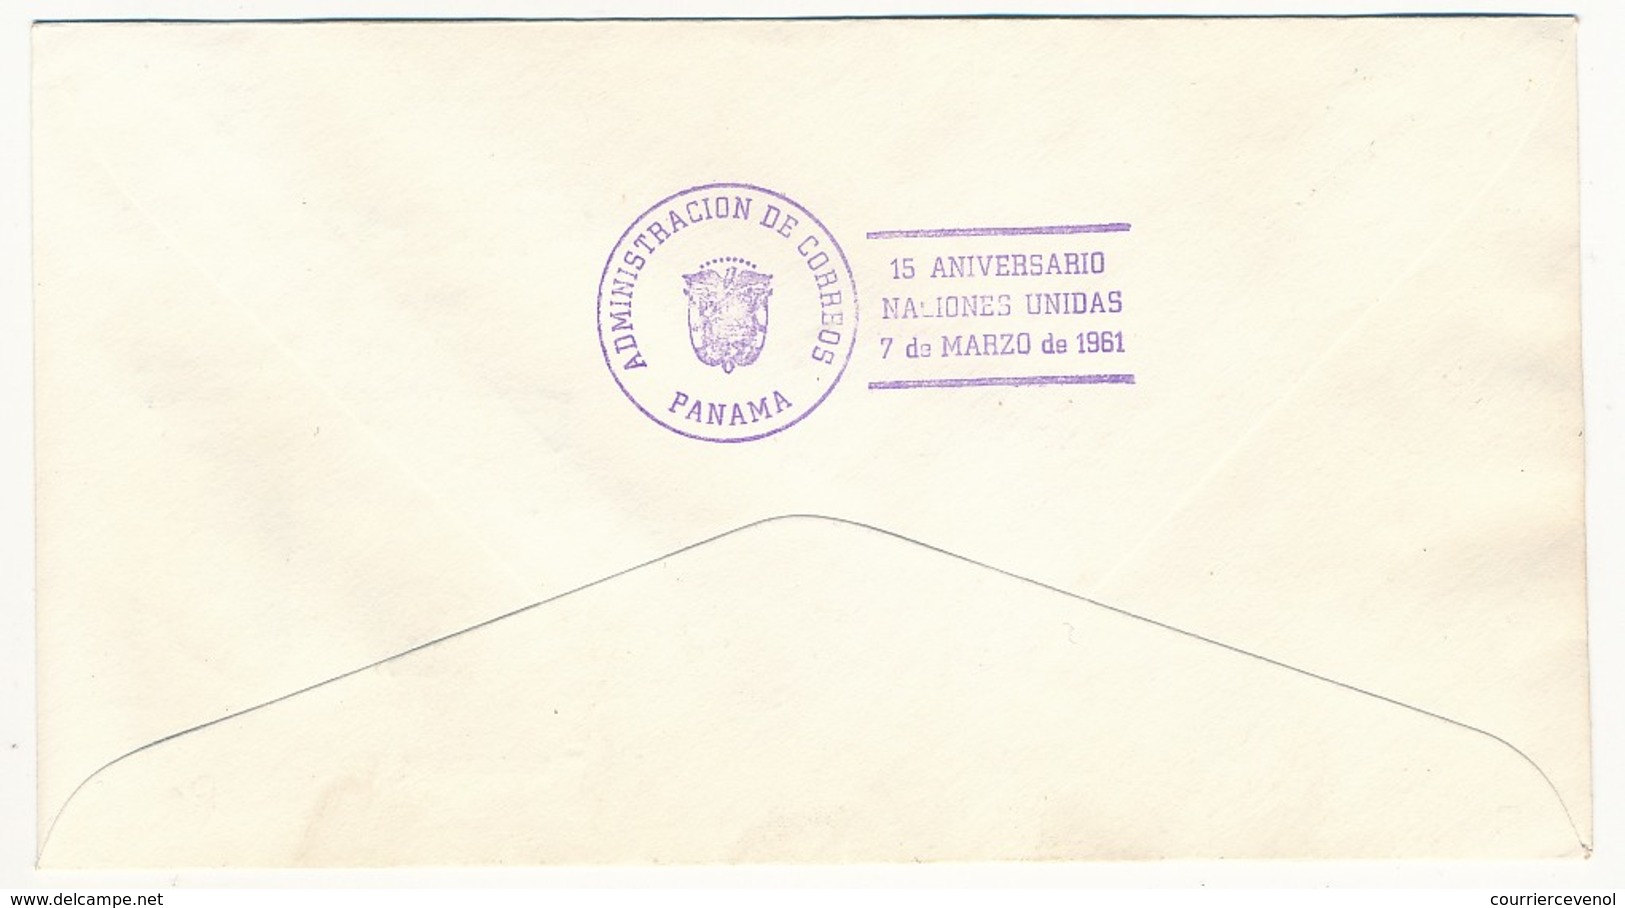 PANAMA - FDC - 15eme Anniversaire Des Nations Unies - 1961 - Panama